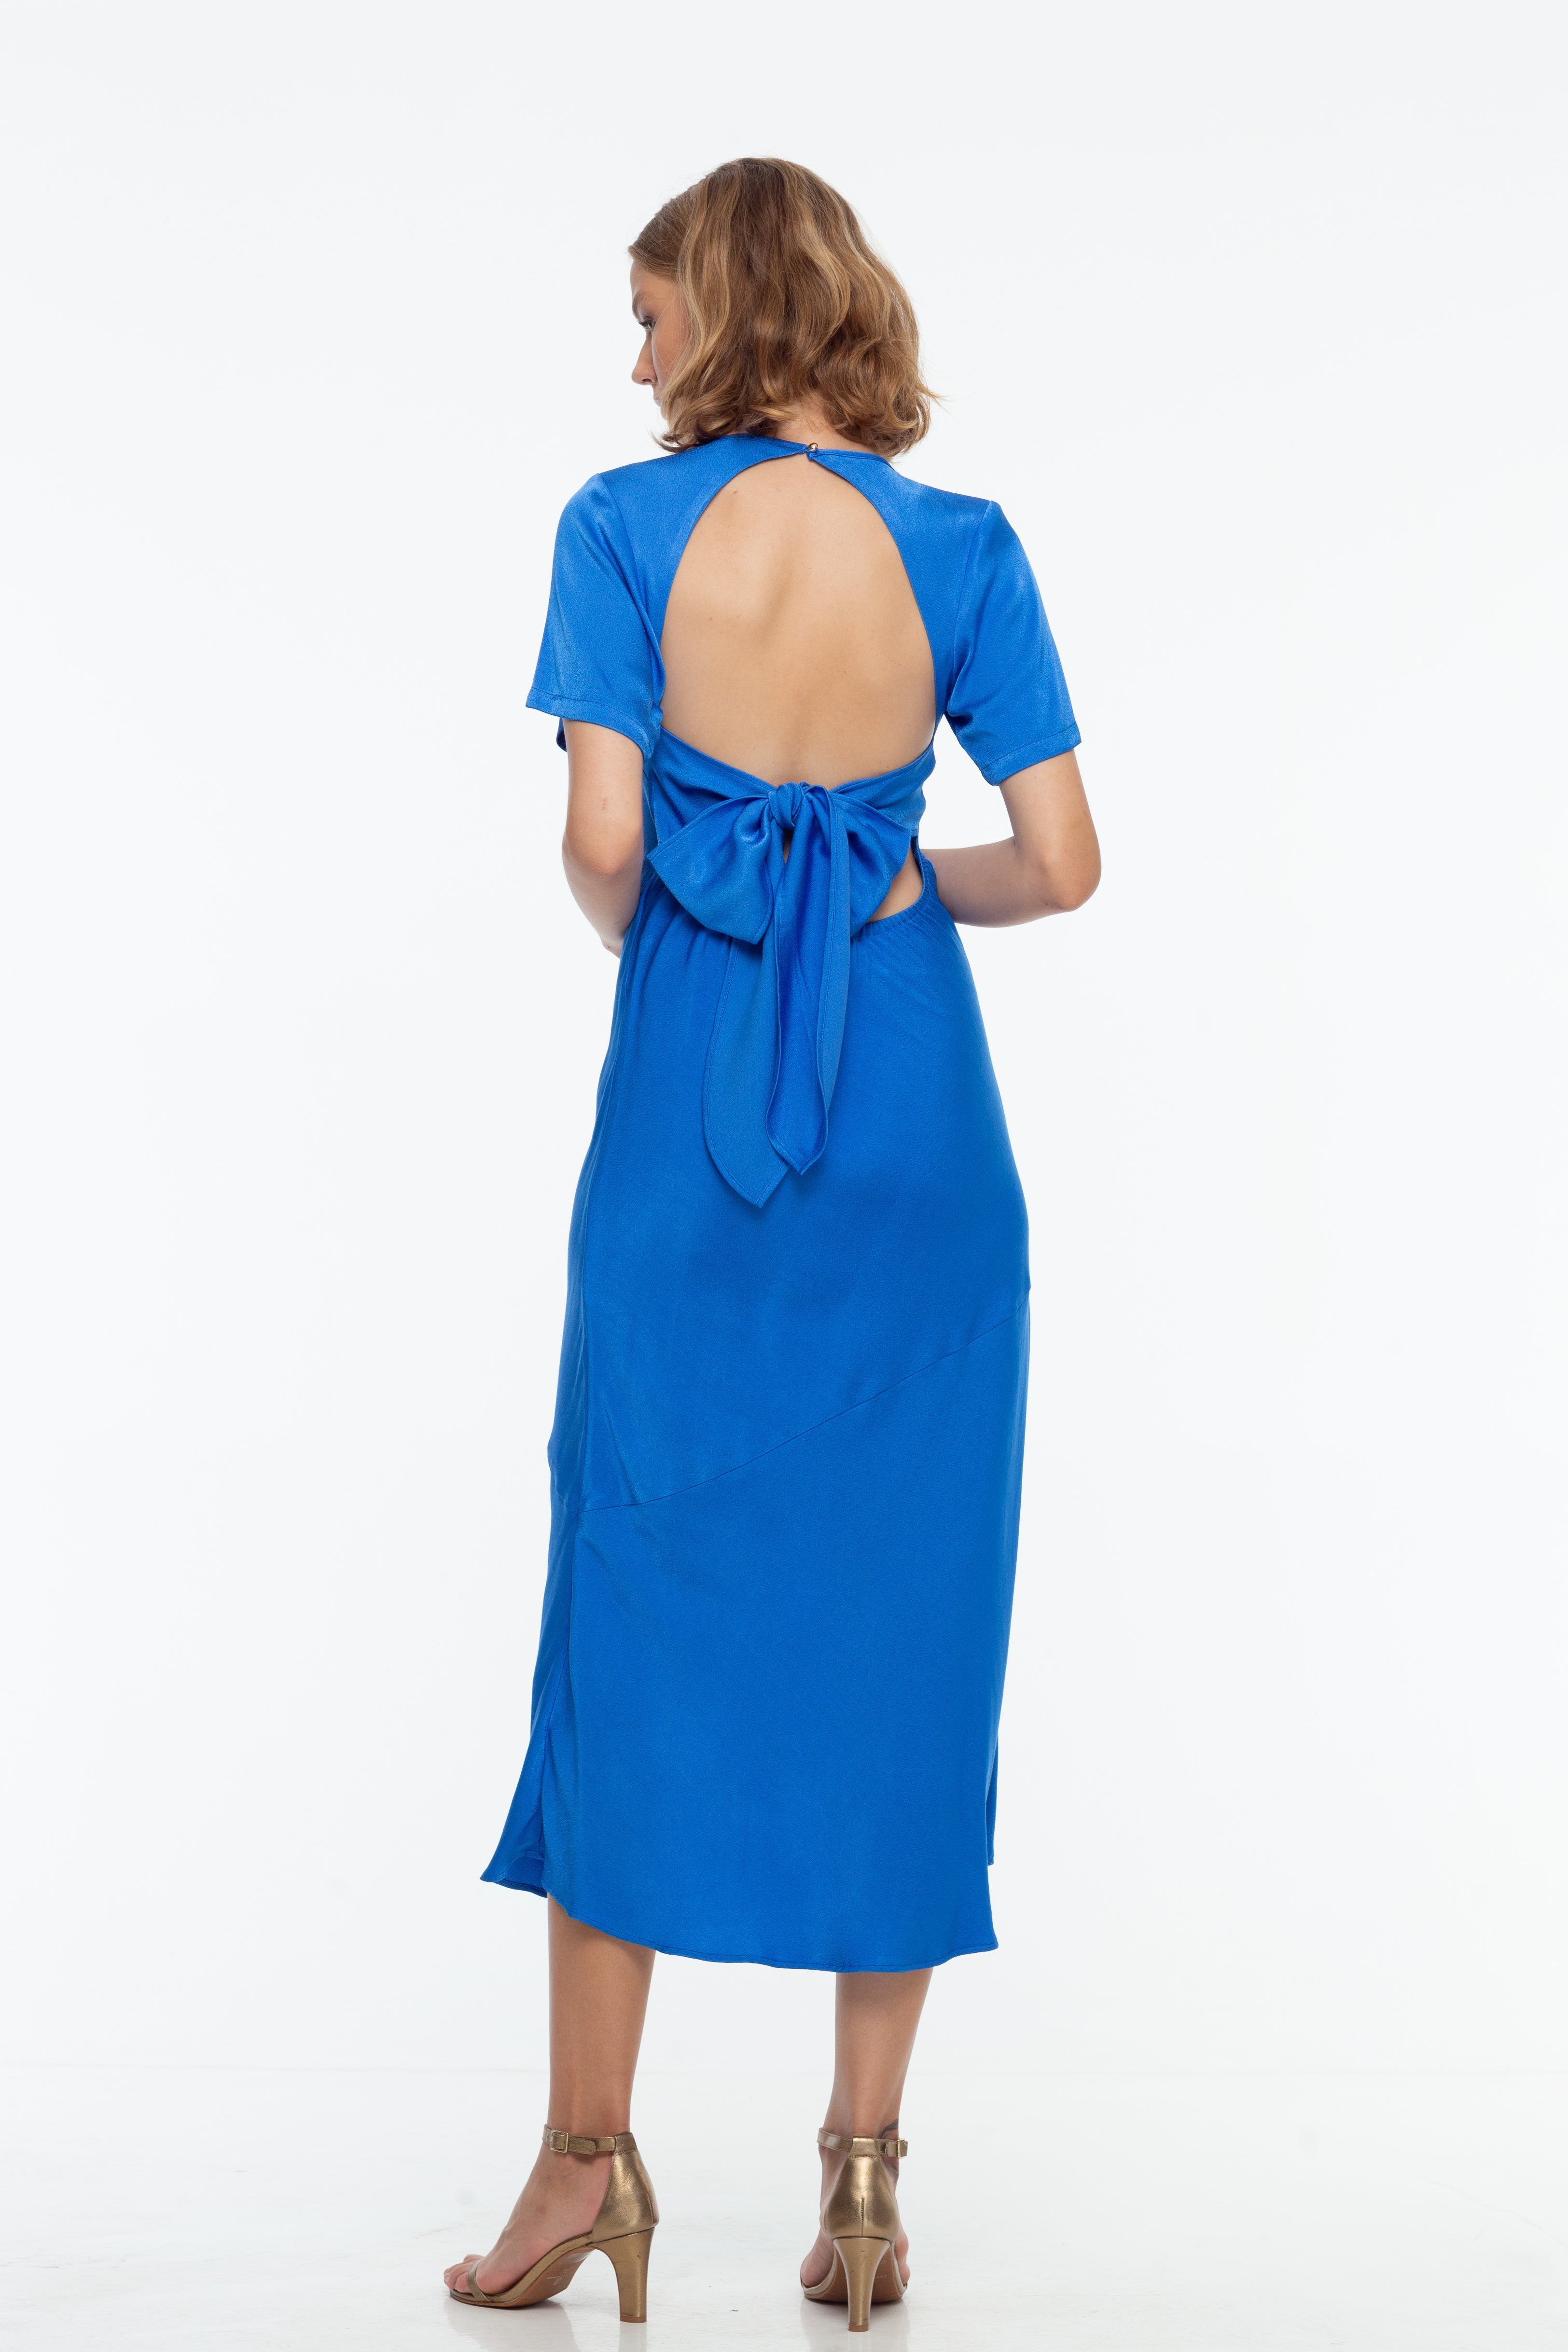 blue satin backless midi dress